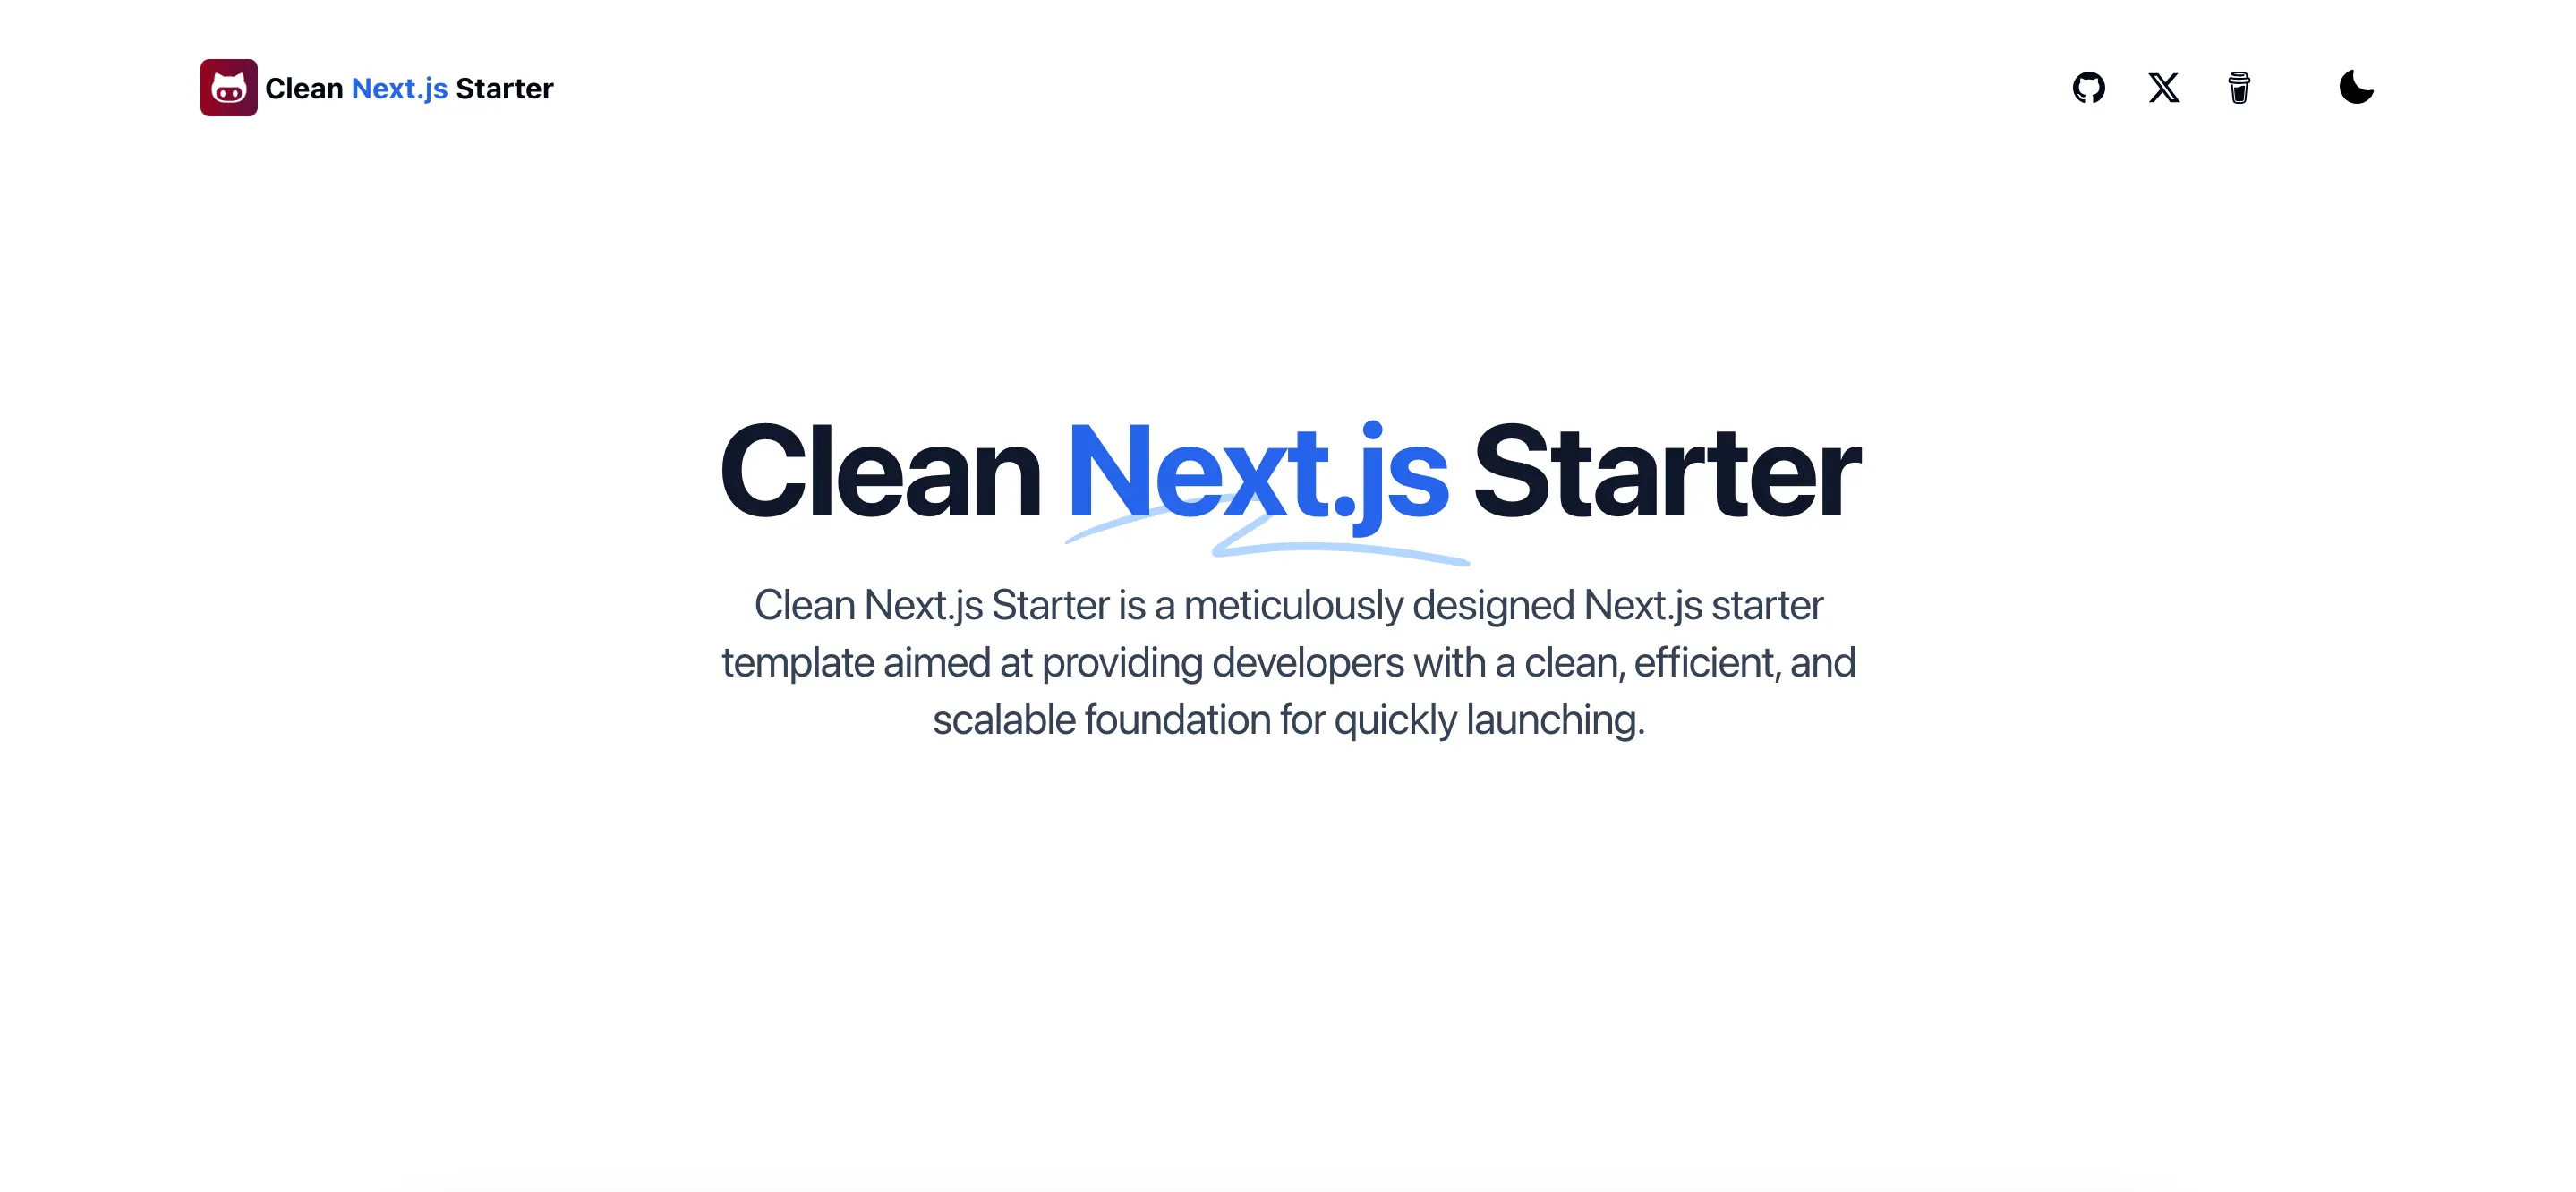 Clean Next.js Starter